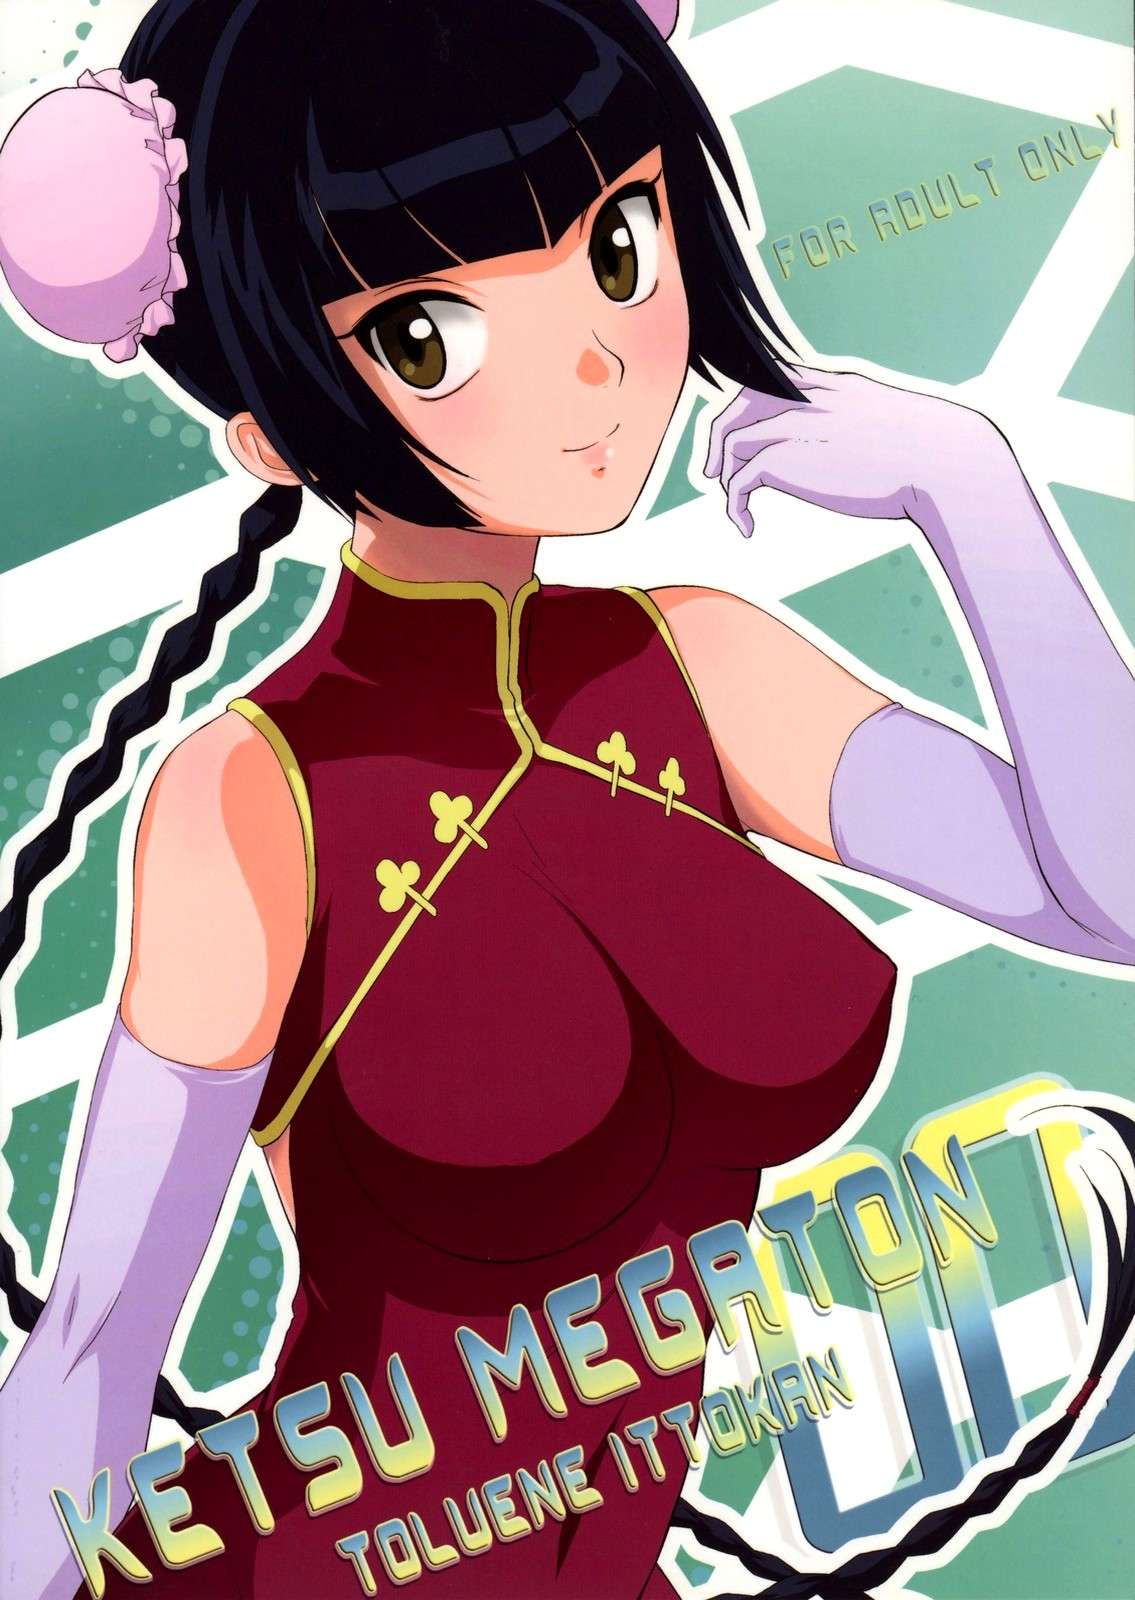 Ketsu Megaton 00 - 49